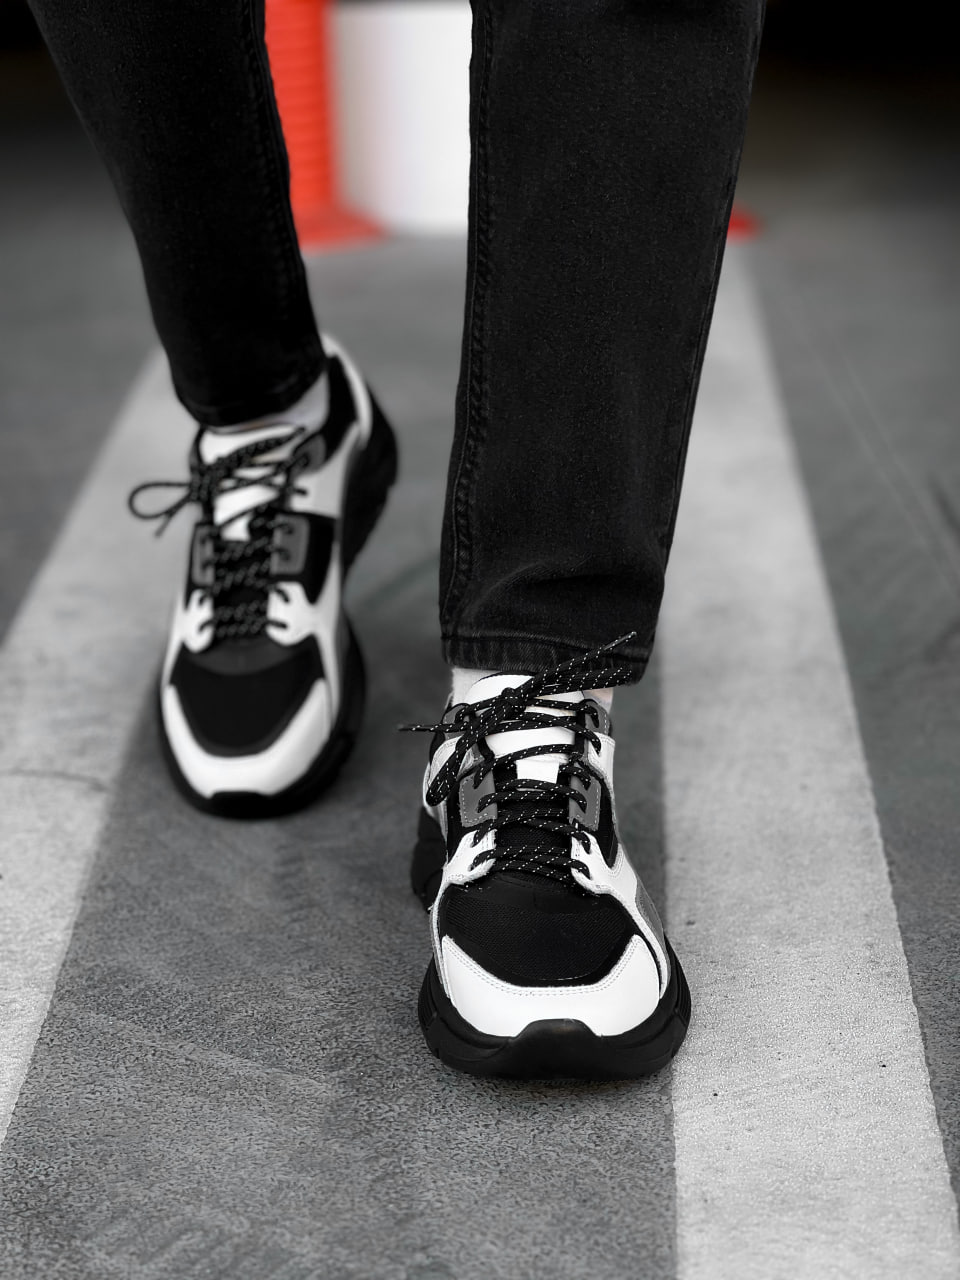 Чоловічі кросівки шкіряні Ultimate чорно-білі (водонепроникні) - Фото 4